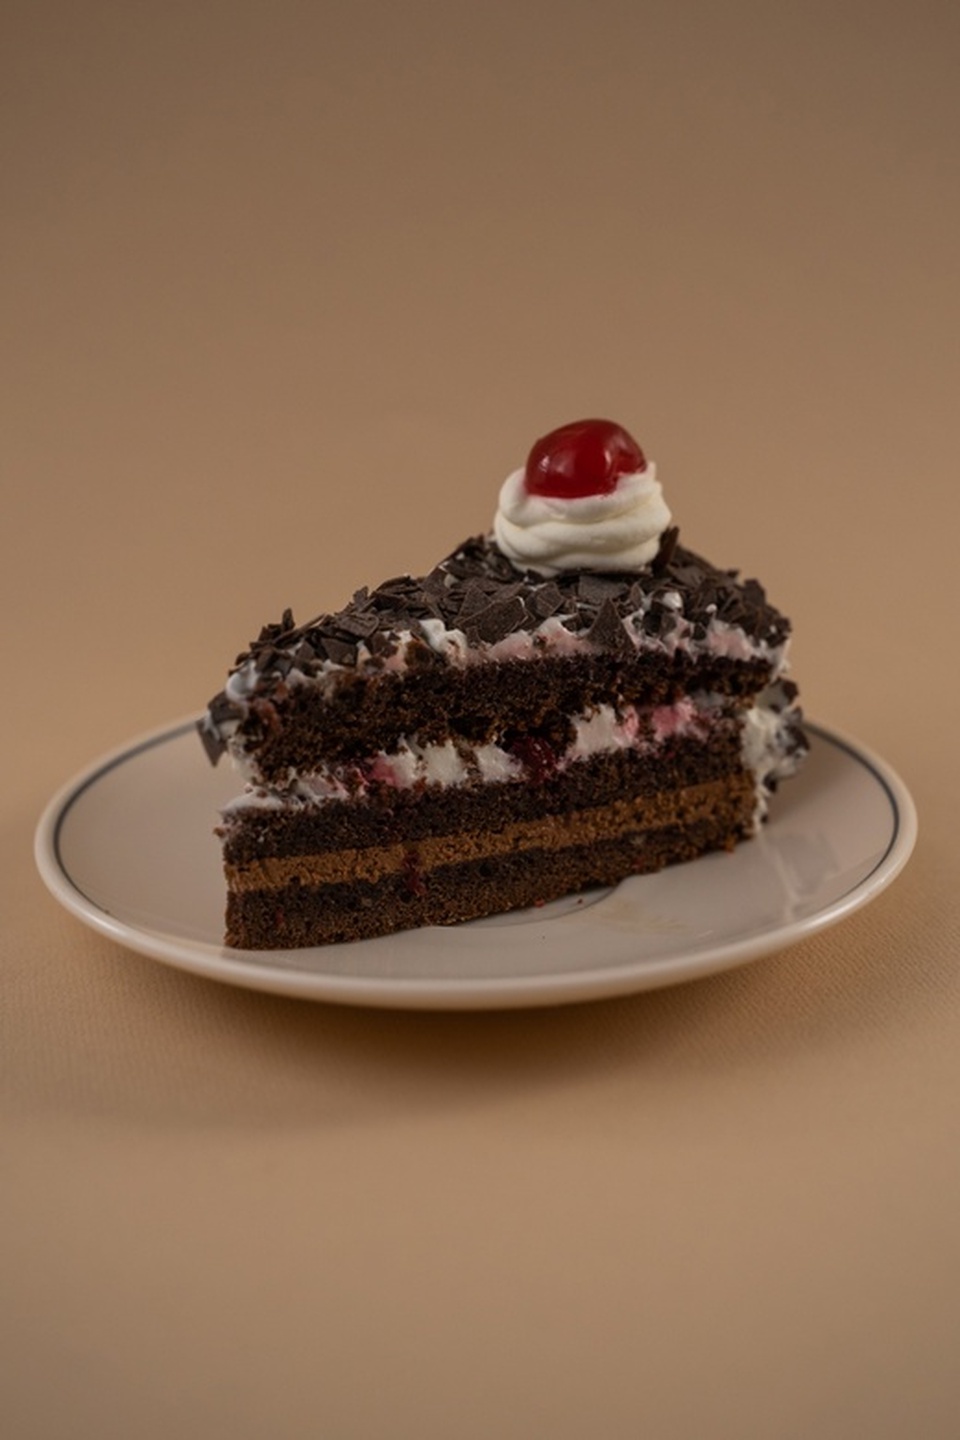 Пирожное "Черный лес" - 190 ₽, заказать онлайн.